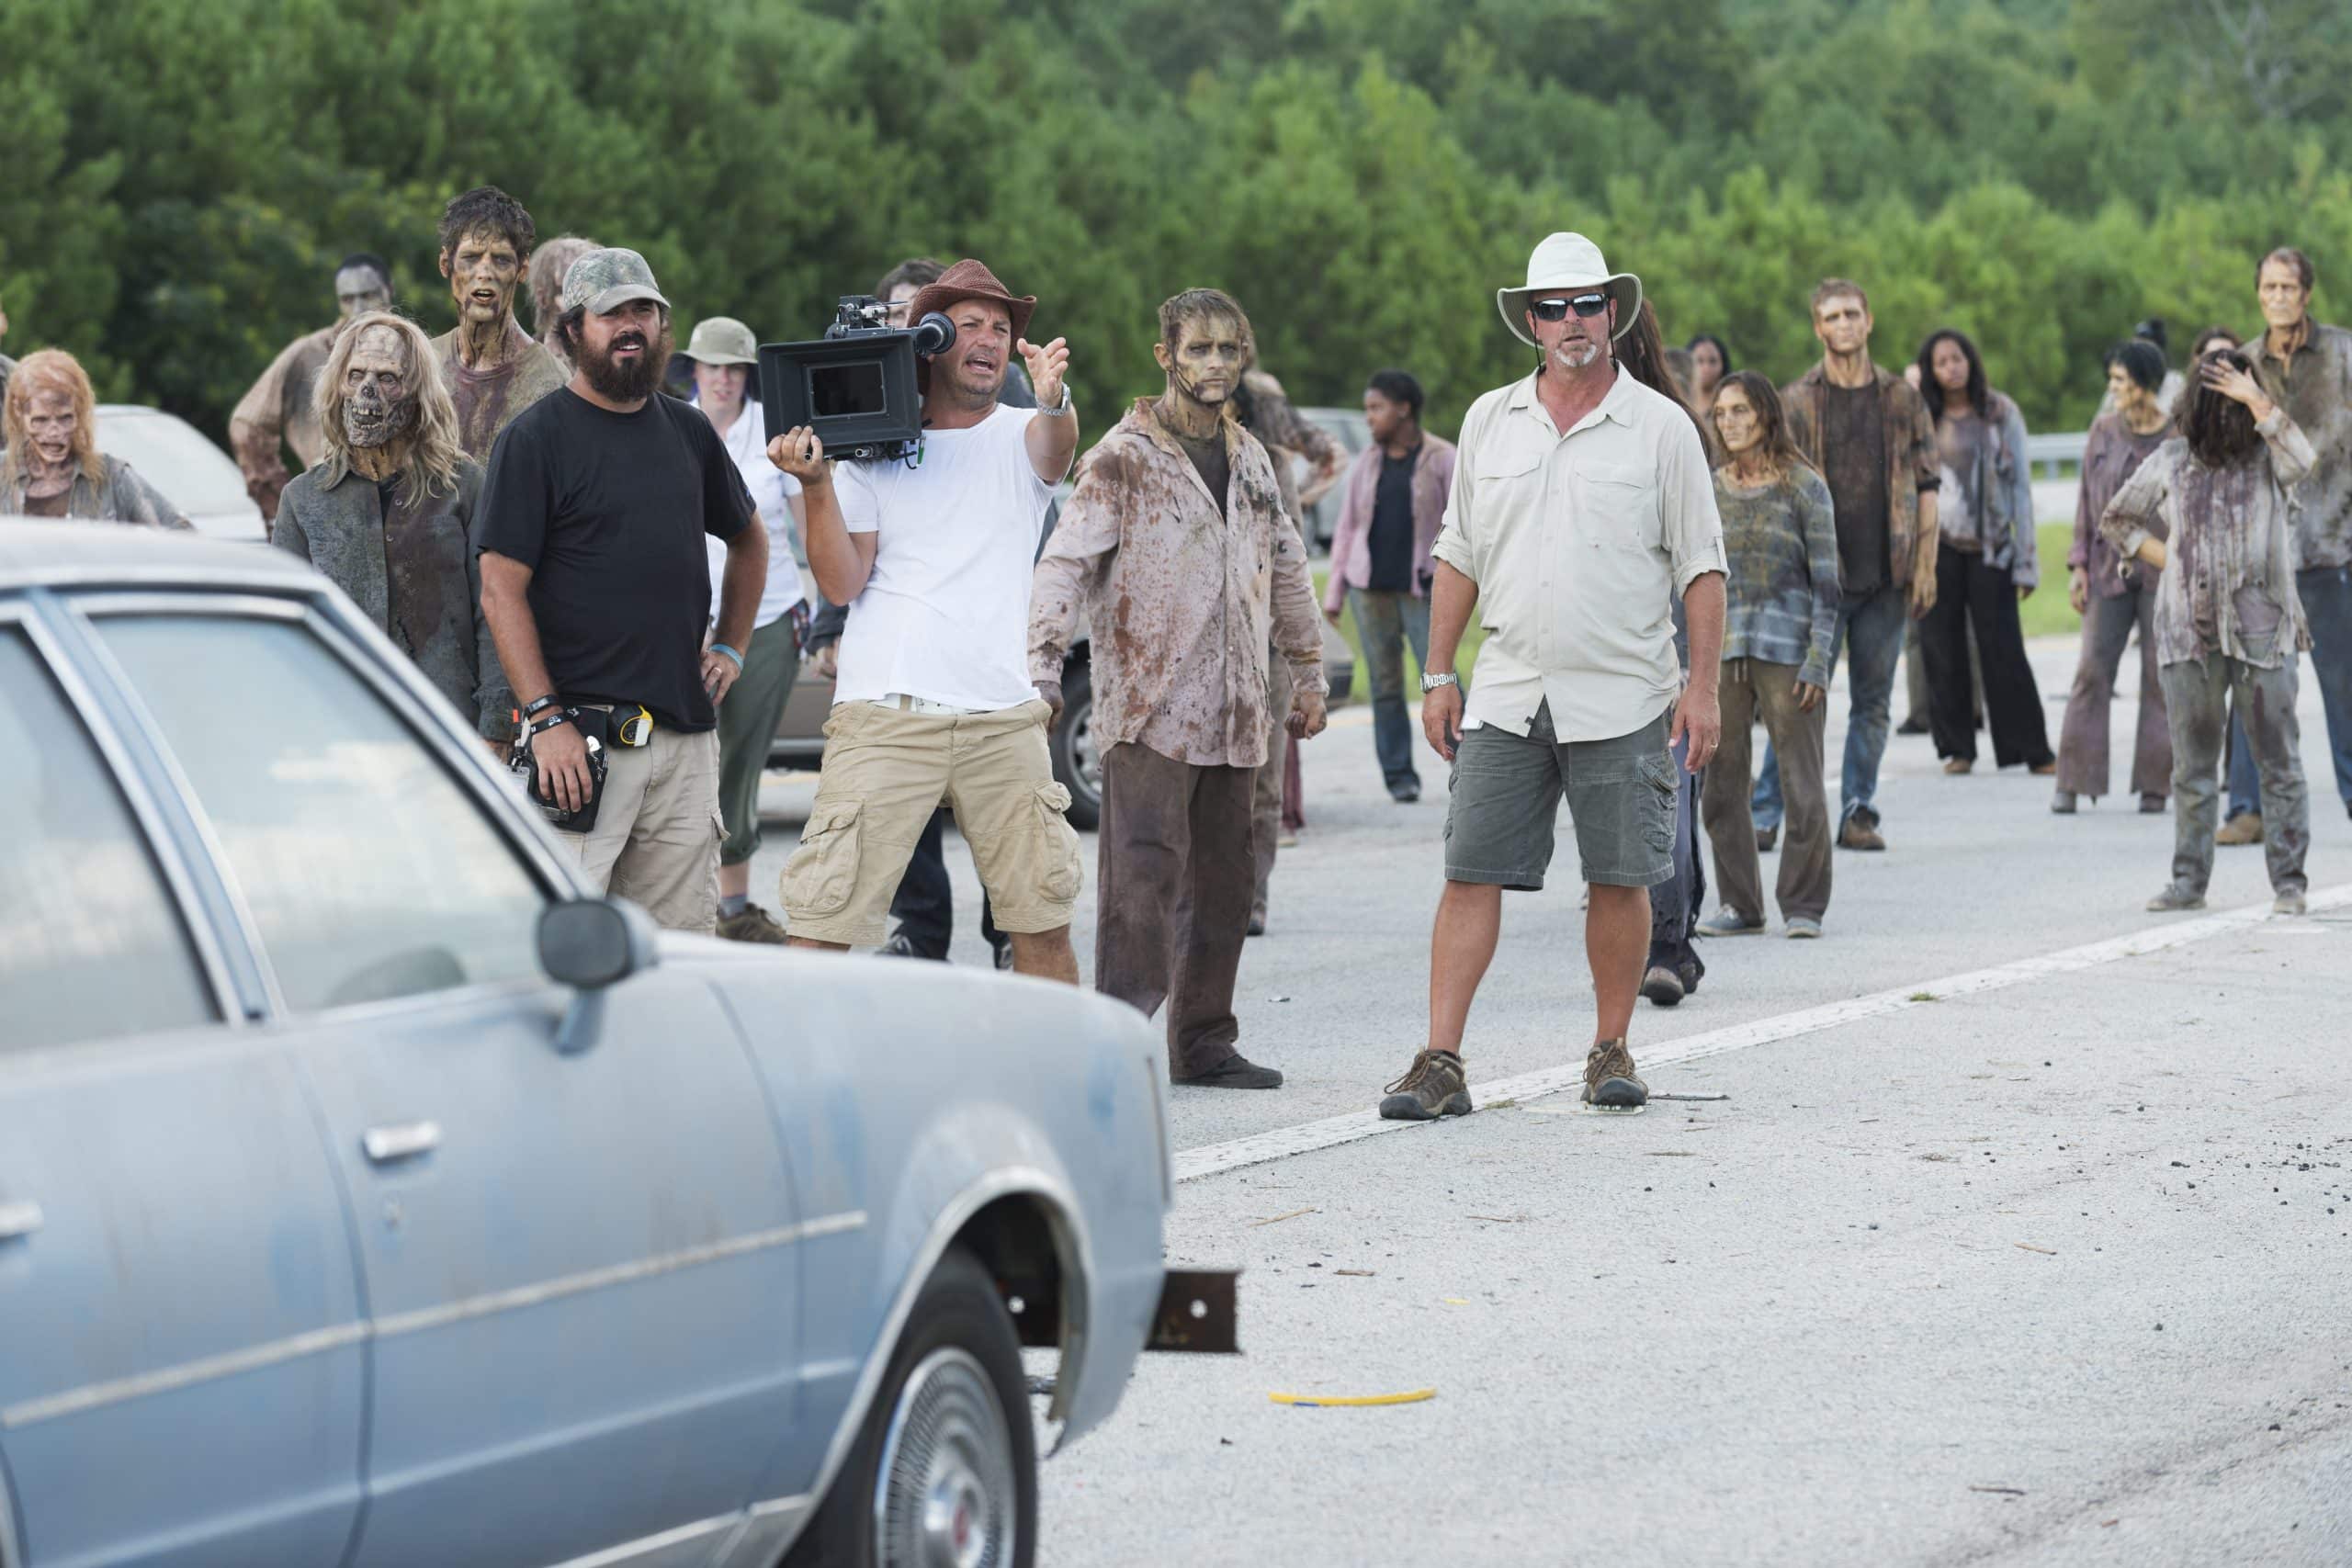 Trabajos de cine: El director de 'The Walking Dead' Michael Satrazemis dispara a los zombis con película